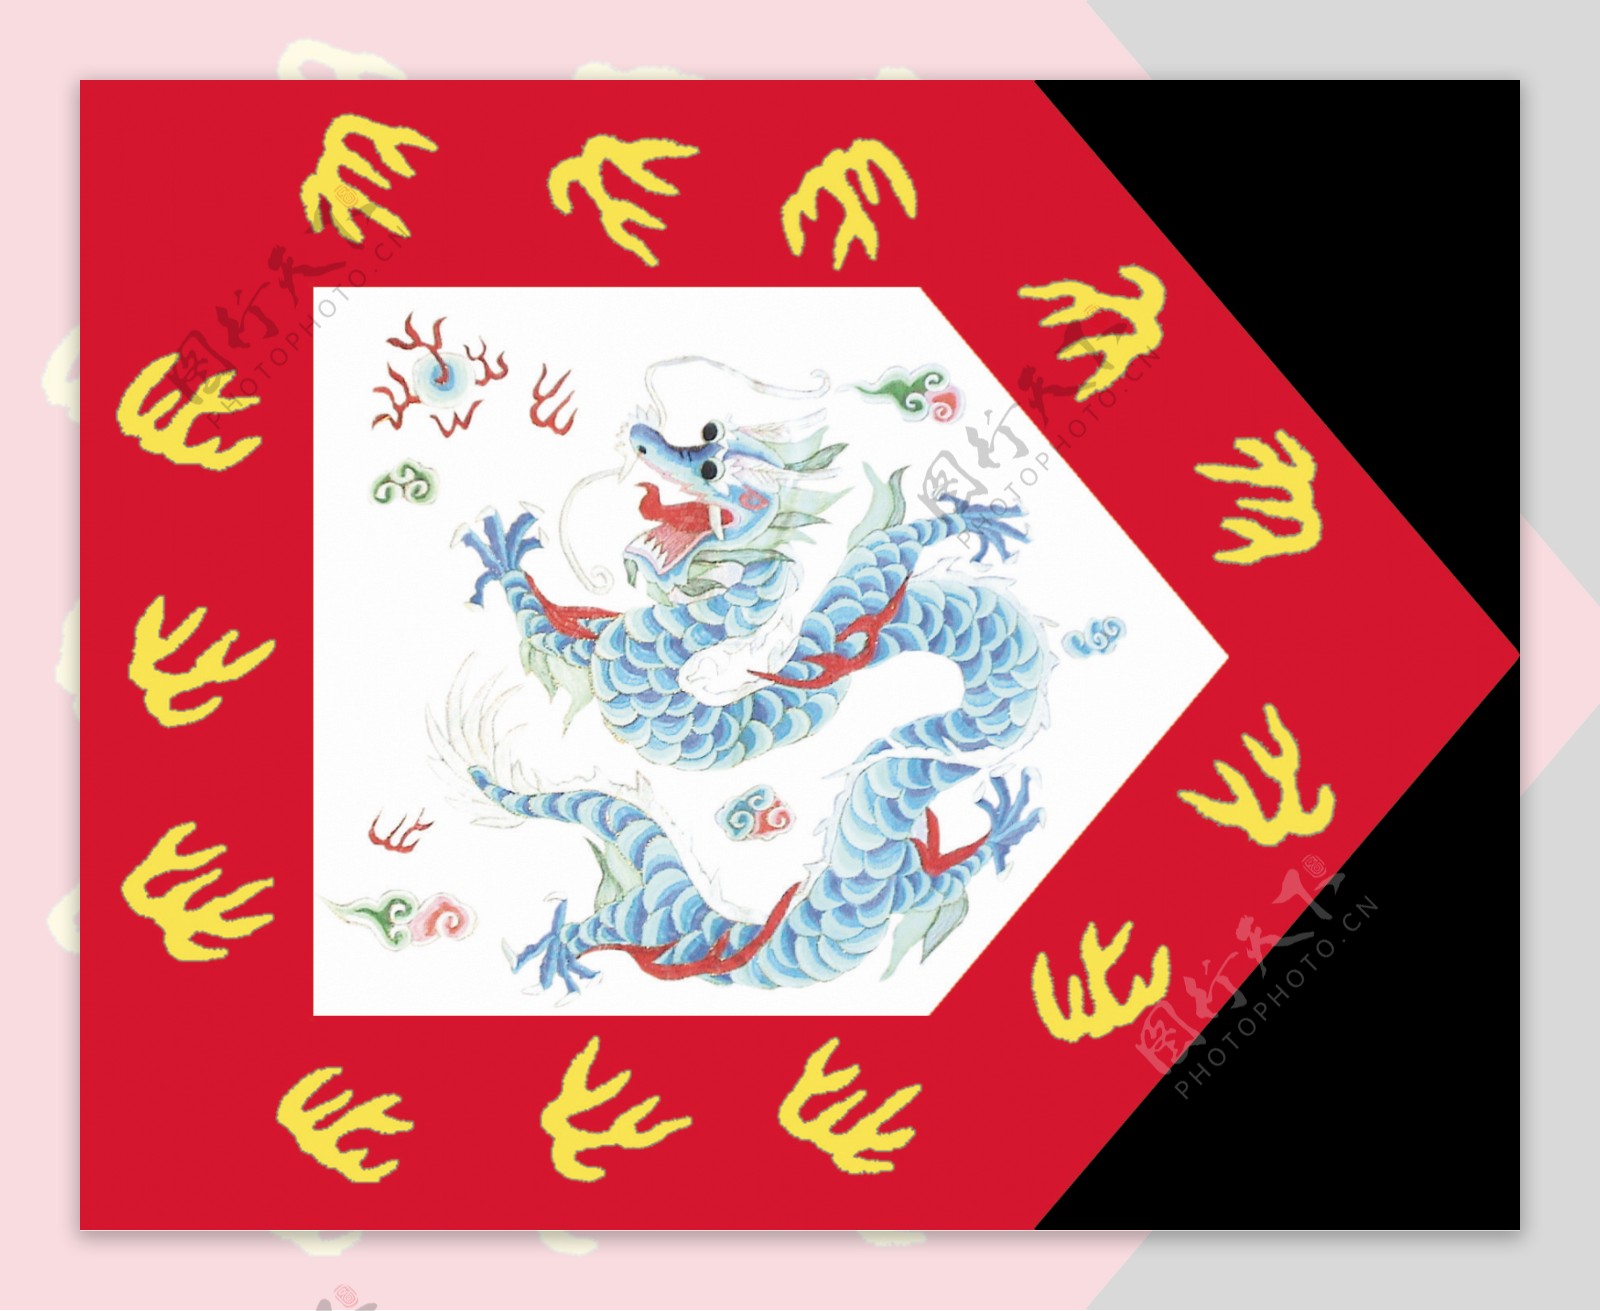 文献分享：《皇朝礼器图式》中的八旗护军统领纛图 - 哔哩哔哩